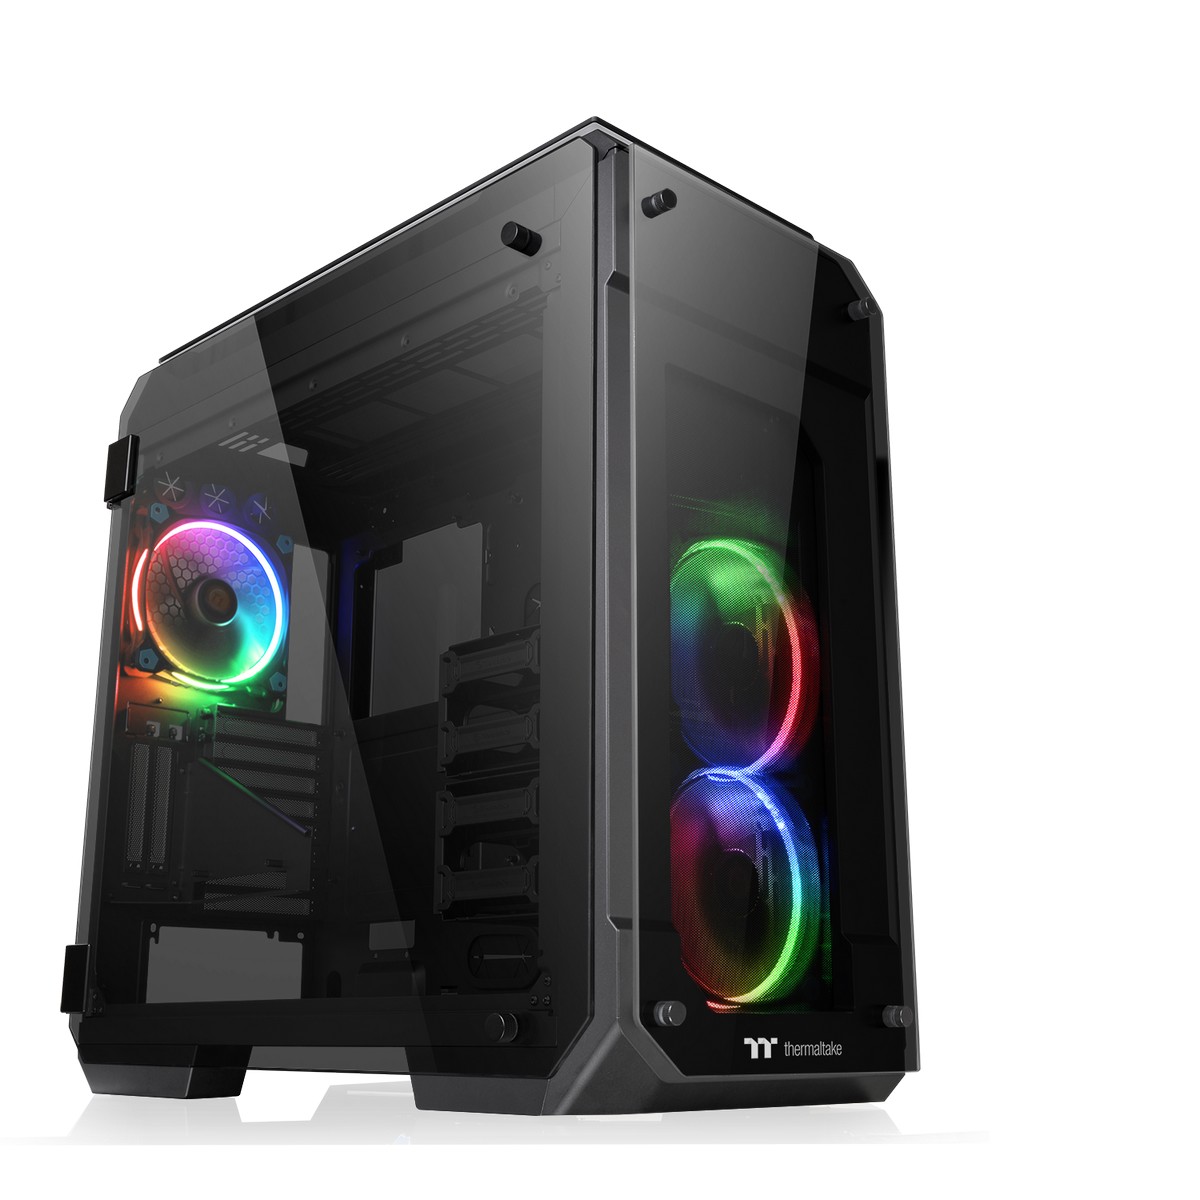 Thermaltake - Thermaltake View 71 RGB Full Tower Gaming Case - Black Tempered Glass